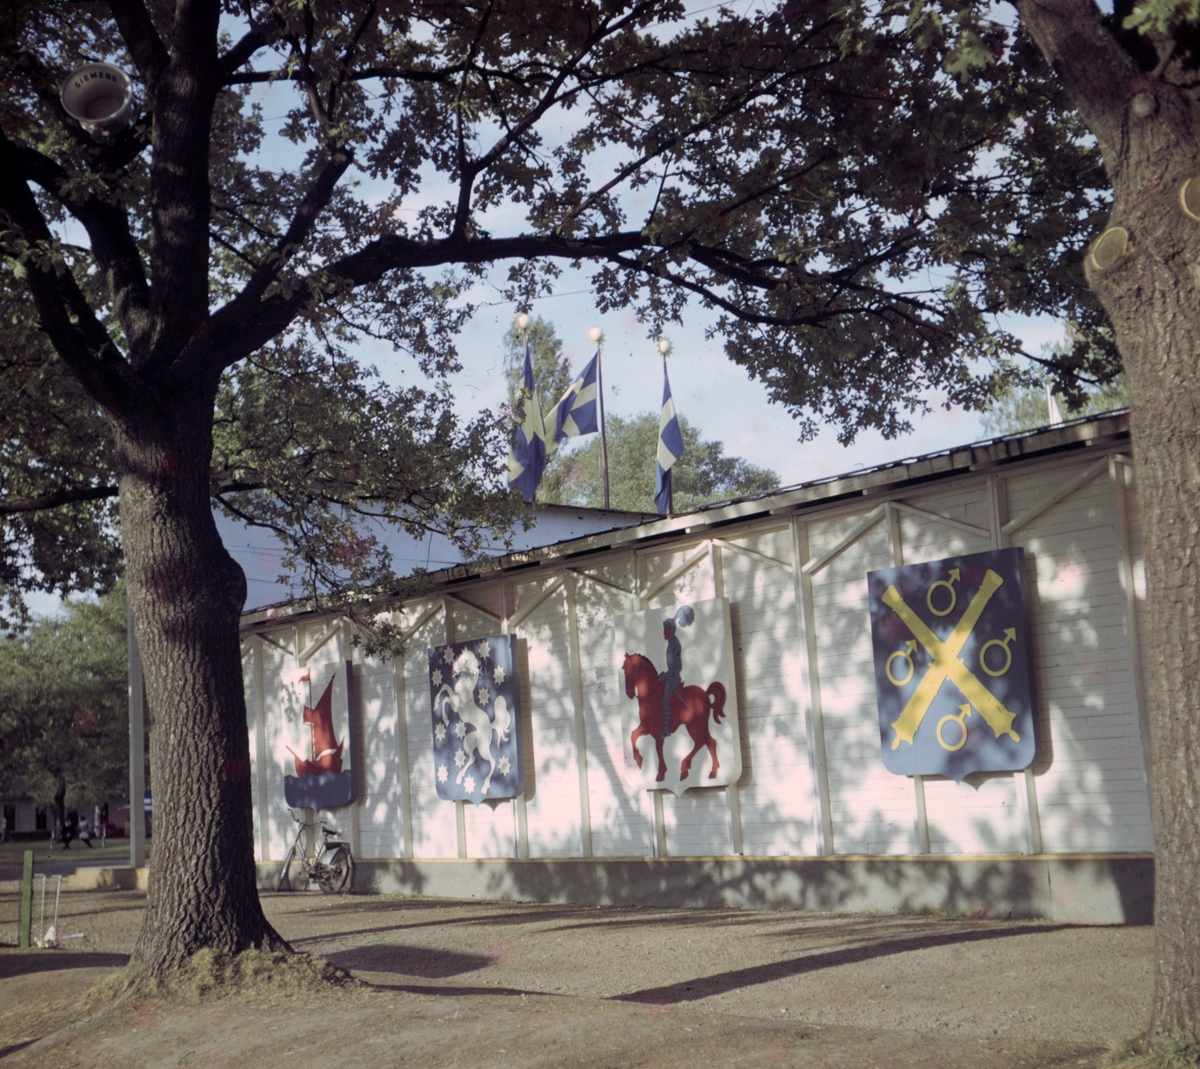 Färgbild från Utställningen "Värmland Visar" år 1947 i Stadsträdgården, Vänershov. Utställningen invigdes den 19 juni.